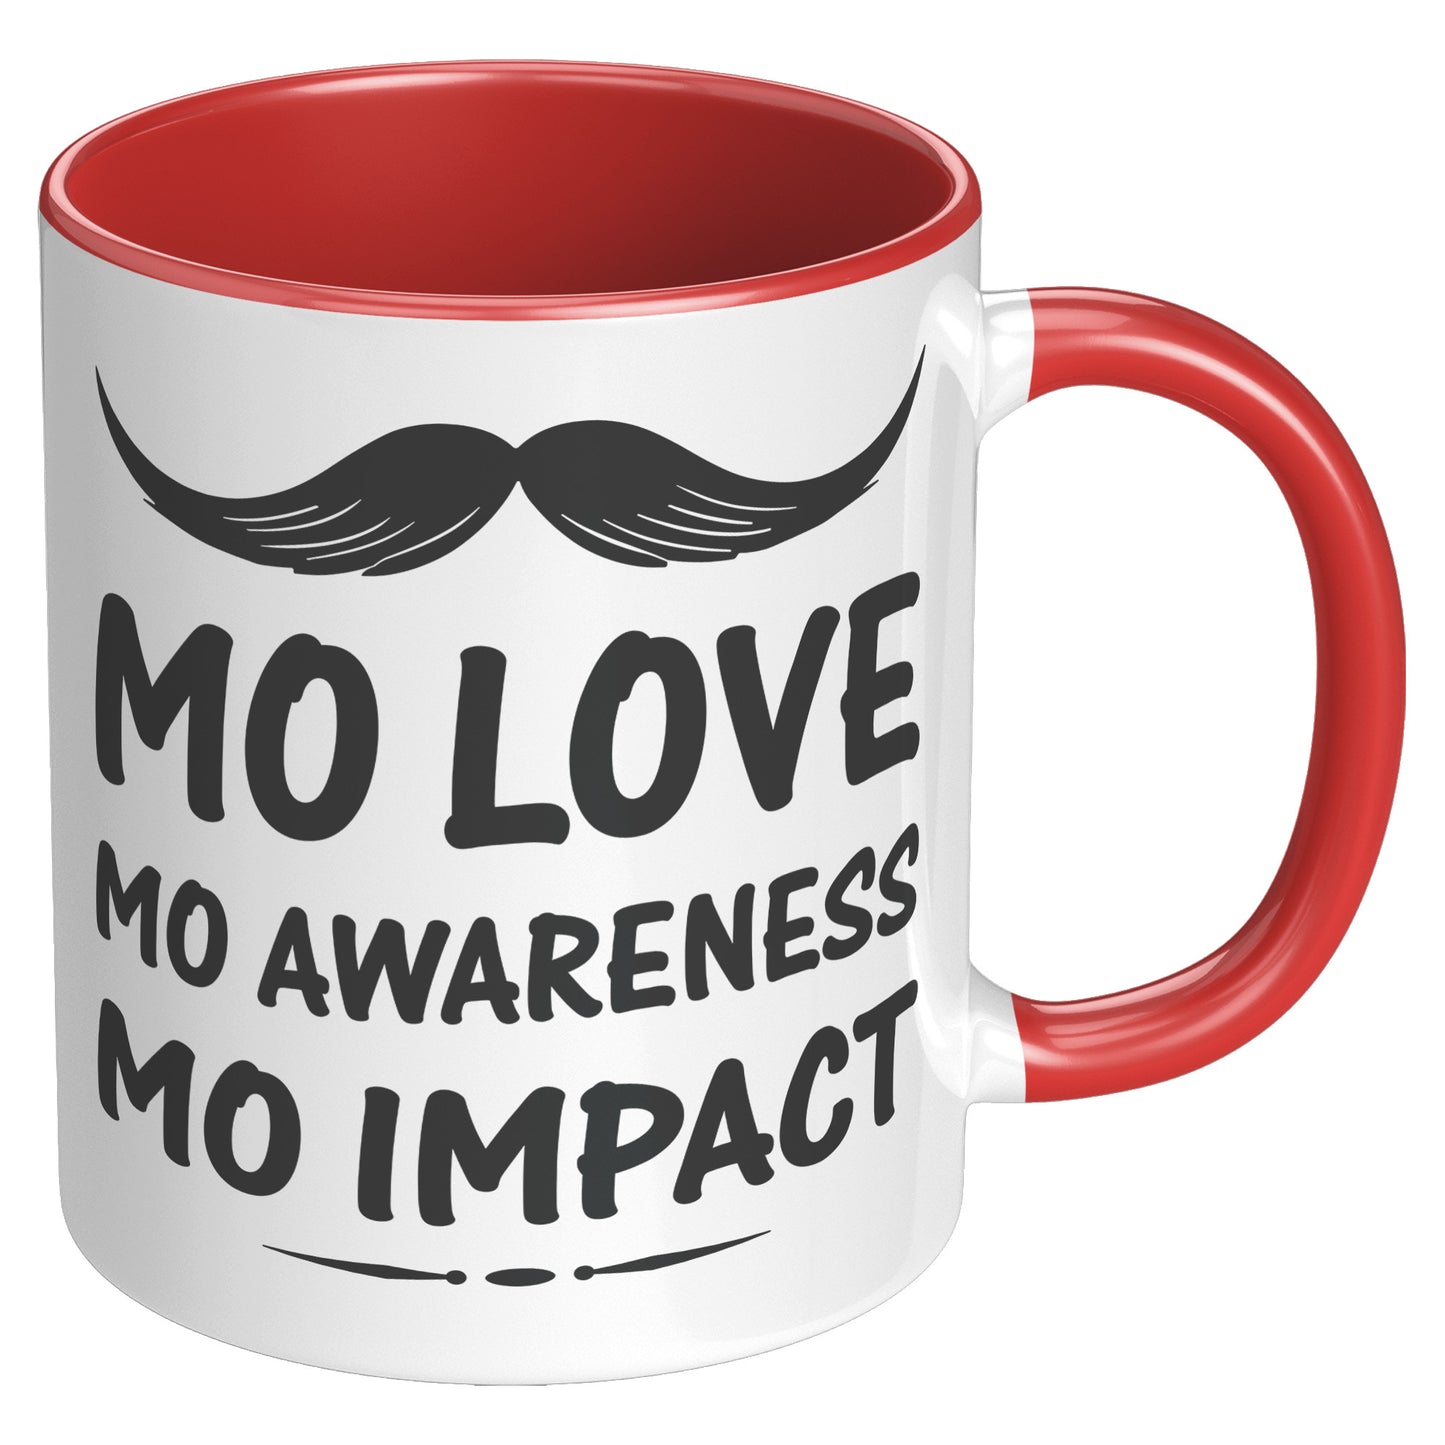 11oz Accent Mug Movember Mo Love Mo Awareness Mo Impact Both Side